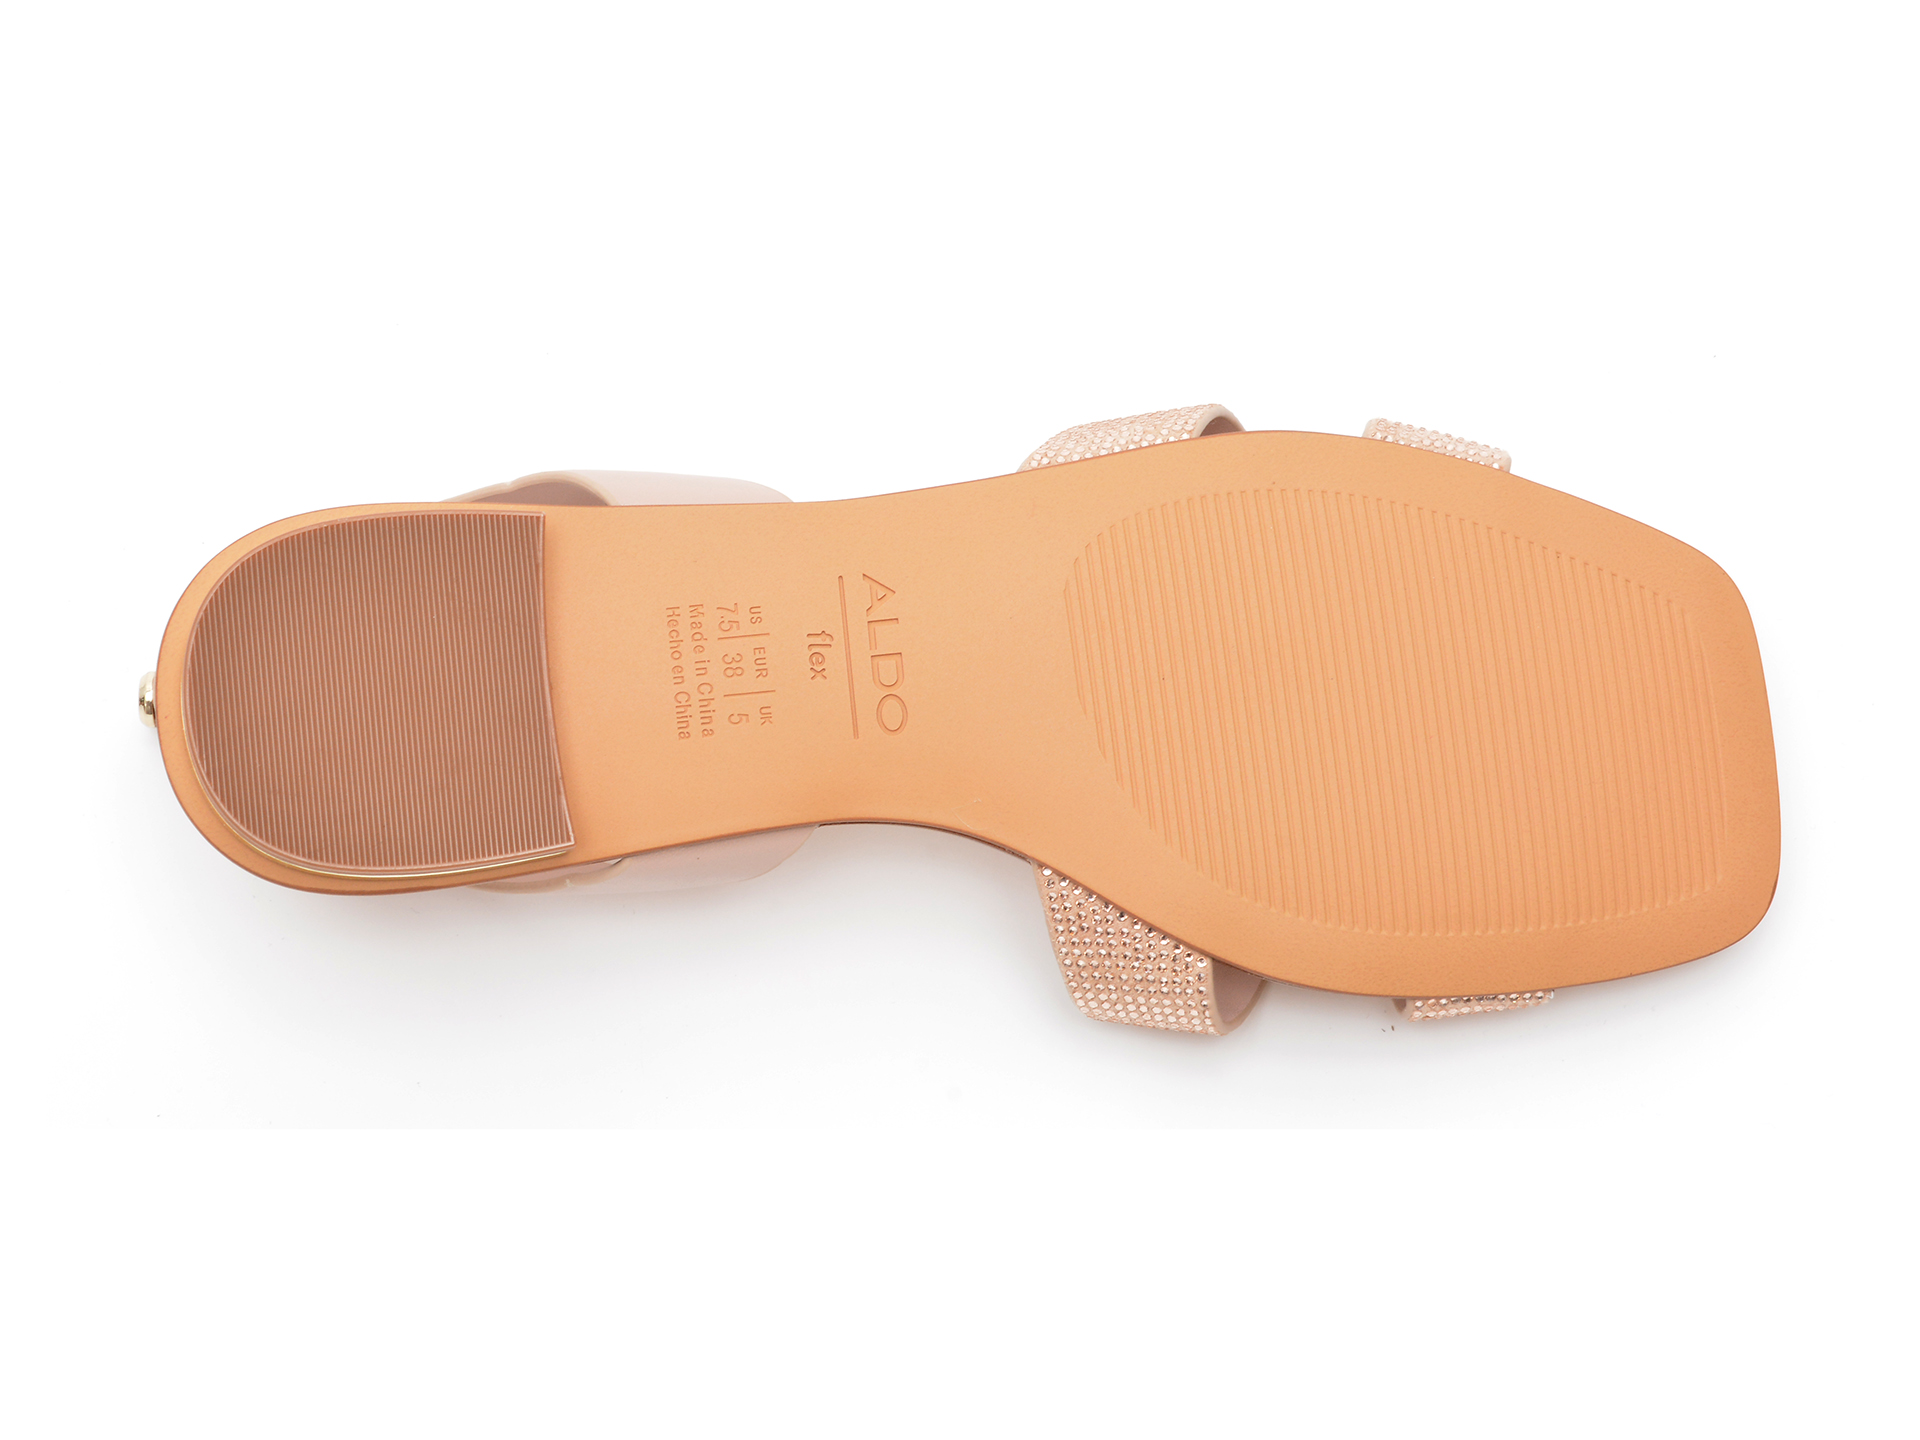 Sandale ALDO nude, ANSON270, din piele ecologica